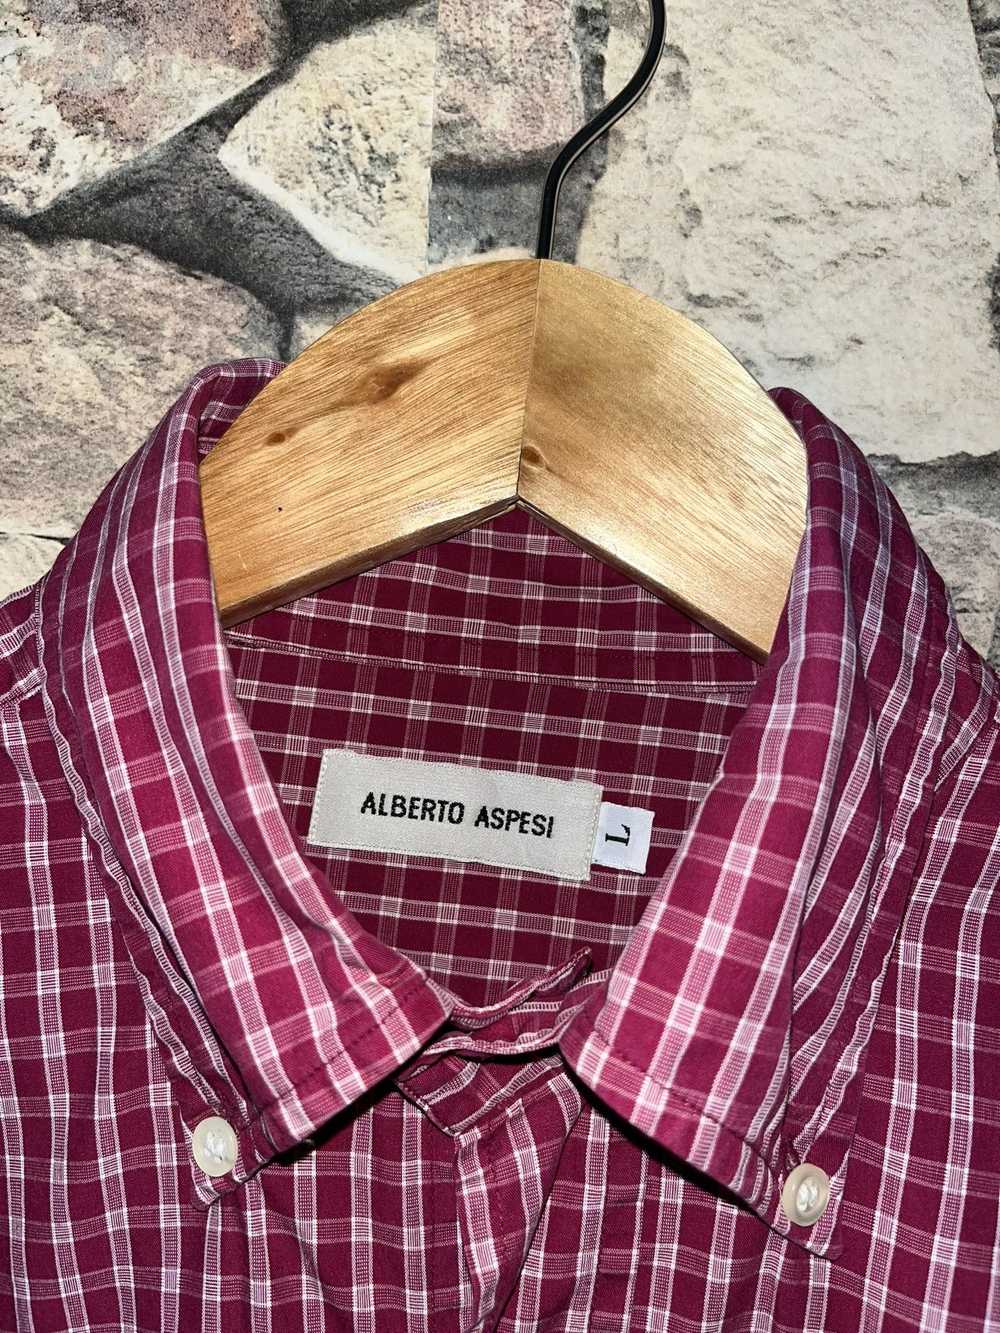 Aspesi × Vintage Alberto Aspesi Vintage Shirt - image 2